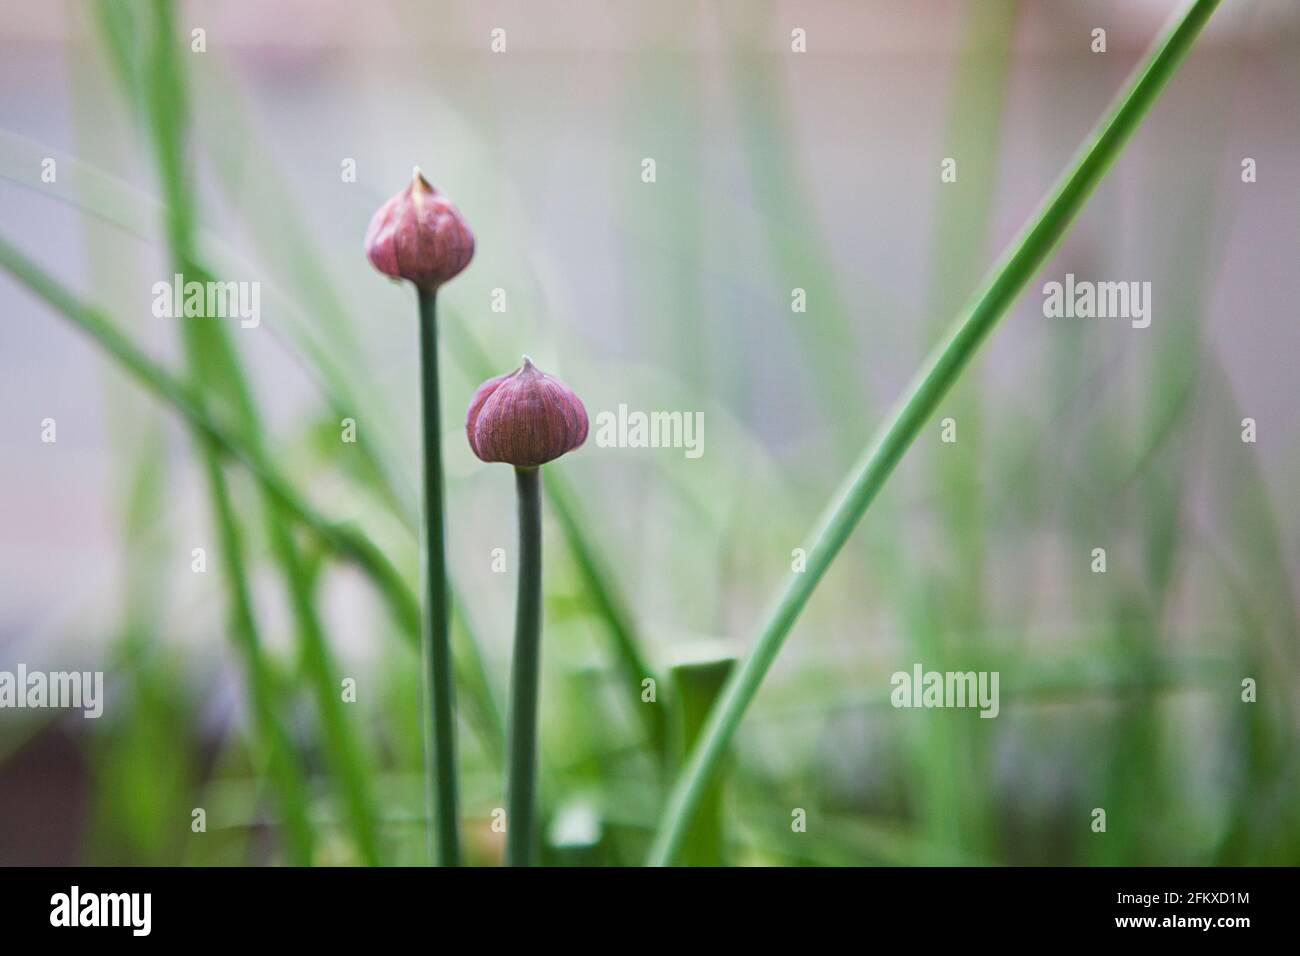 Schnittlauch (kulinarisches Kraut Allium schoenoprasum), der im Garten mit zwei violetten Blütenknospen gepflanzt wurde. Mai, Frühling, Großbritannien Stockfoto